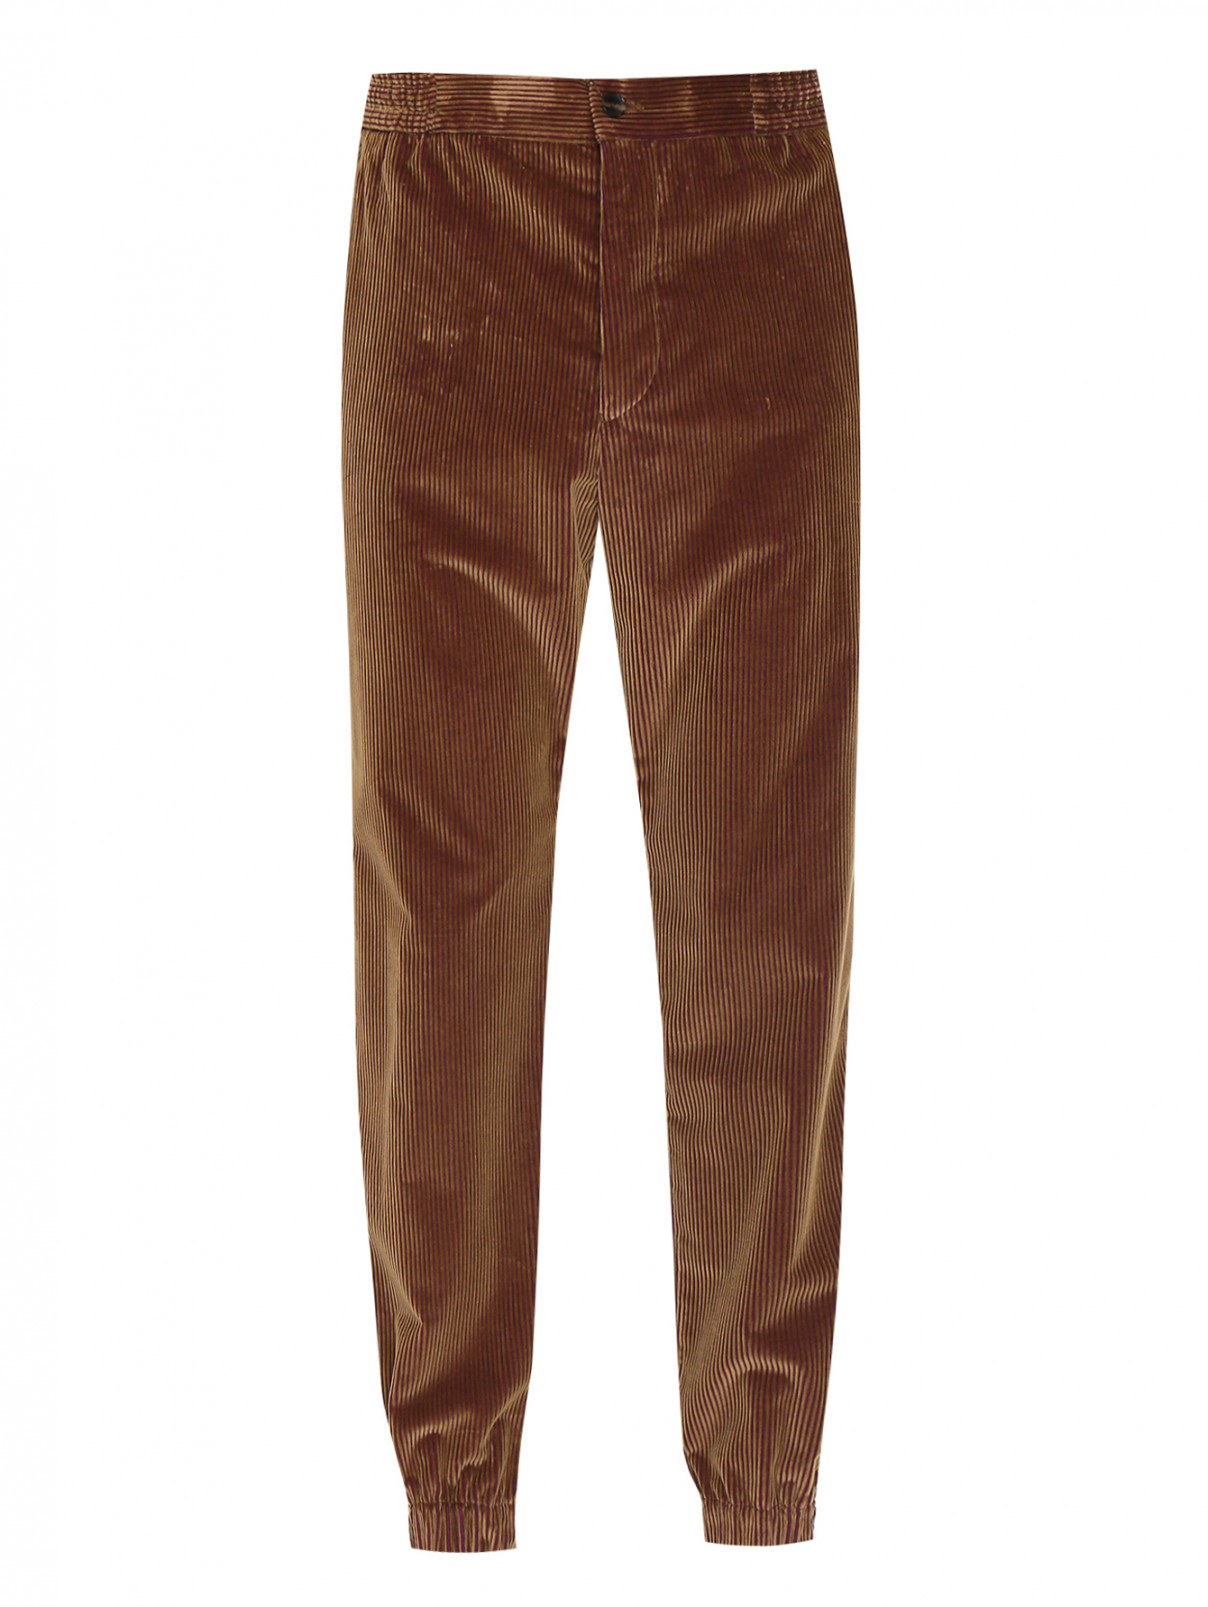 Вельветовые брюки с карманами Etro  –  Общий вид  – Цвет:  Коричневый